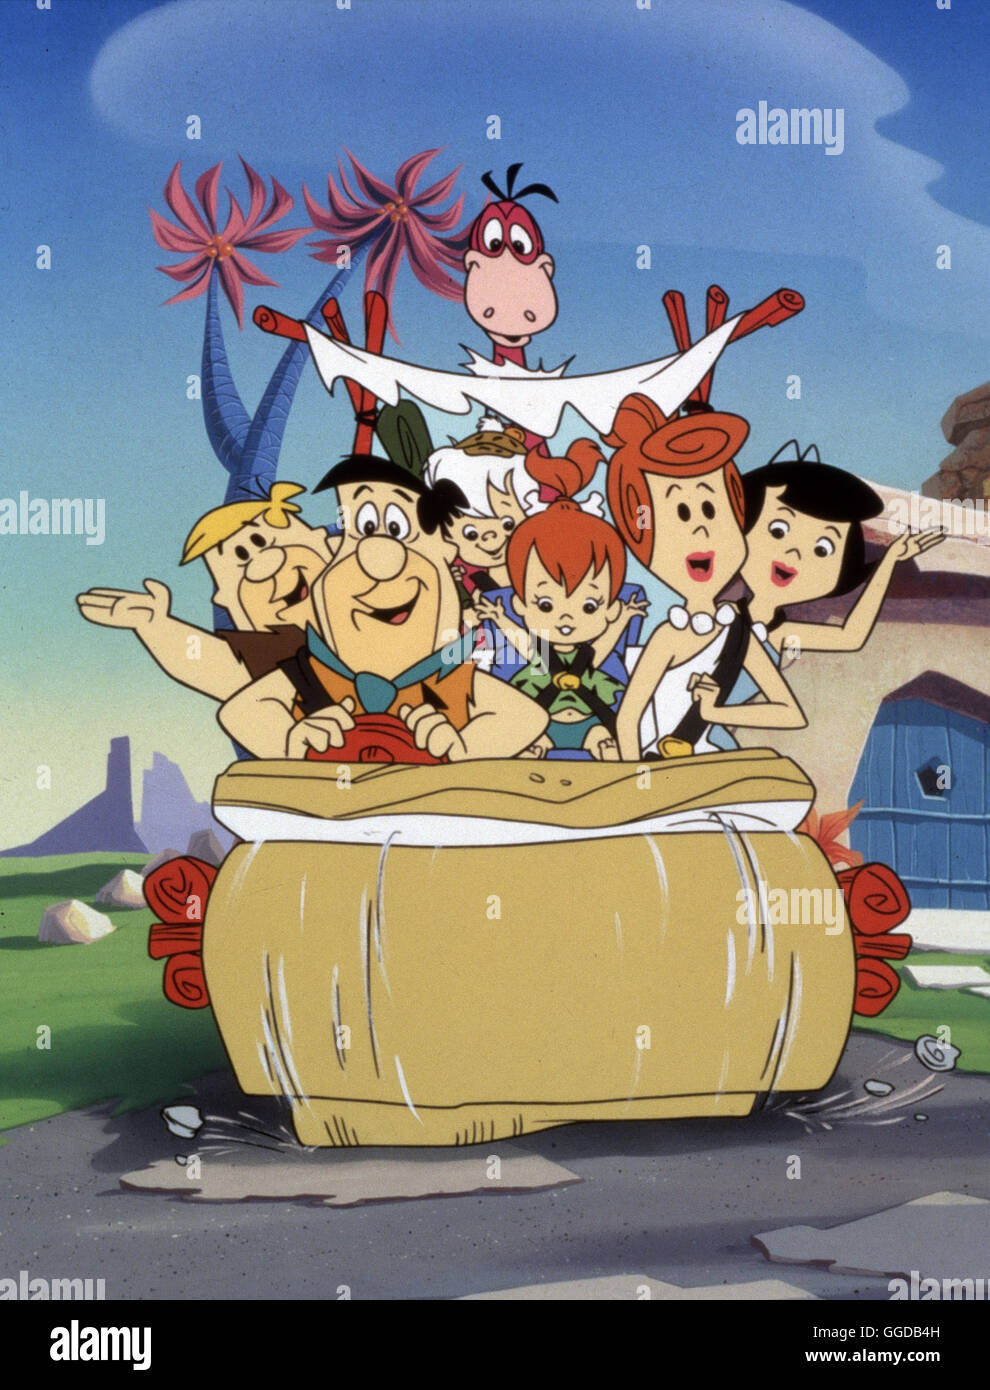 FAMILIE FEUERSTEIN / The Flintstones / The Flintstones: Barney Rubble, Fred Flintstone, Bam Bam Rubble, Dinosaurier Dino, Pebbles Flintstone, Wilma Flintstone, Betty Rubble aka. The Flintstones Stock Photo